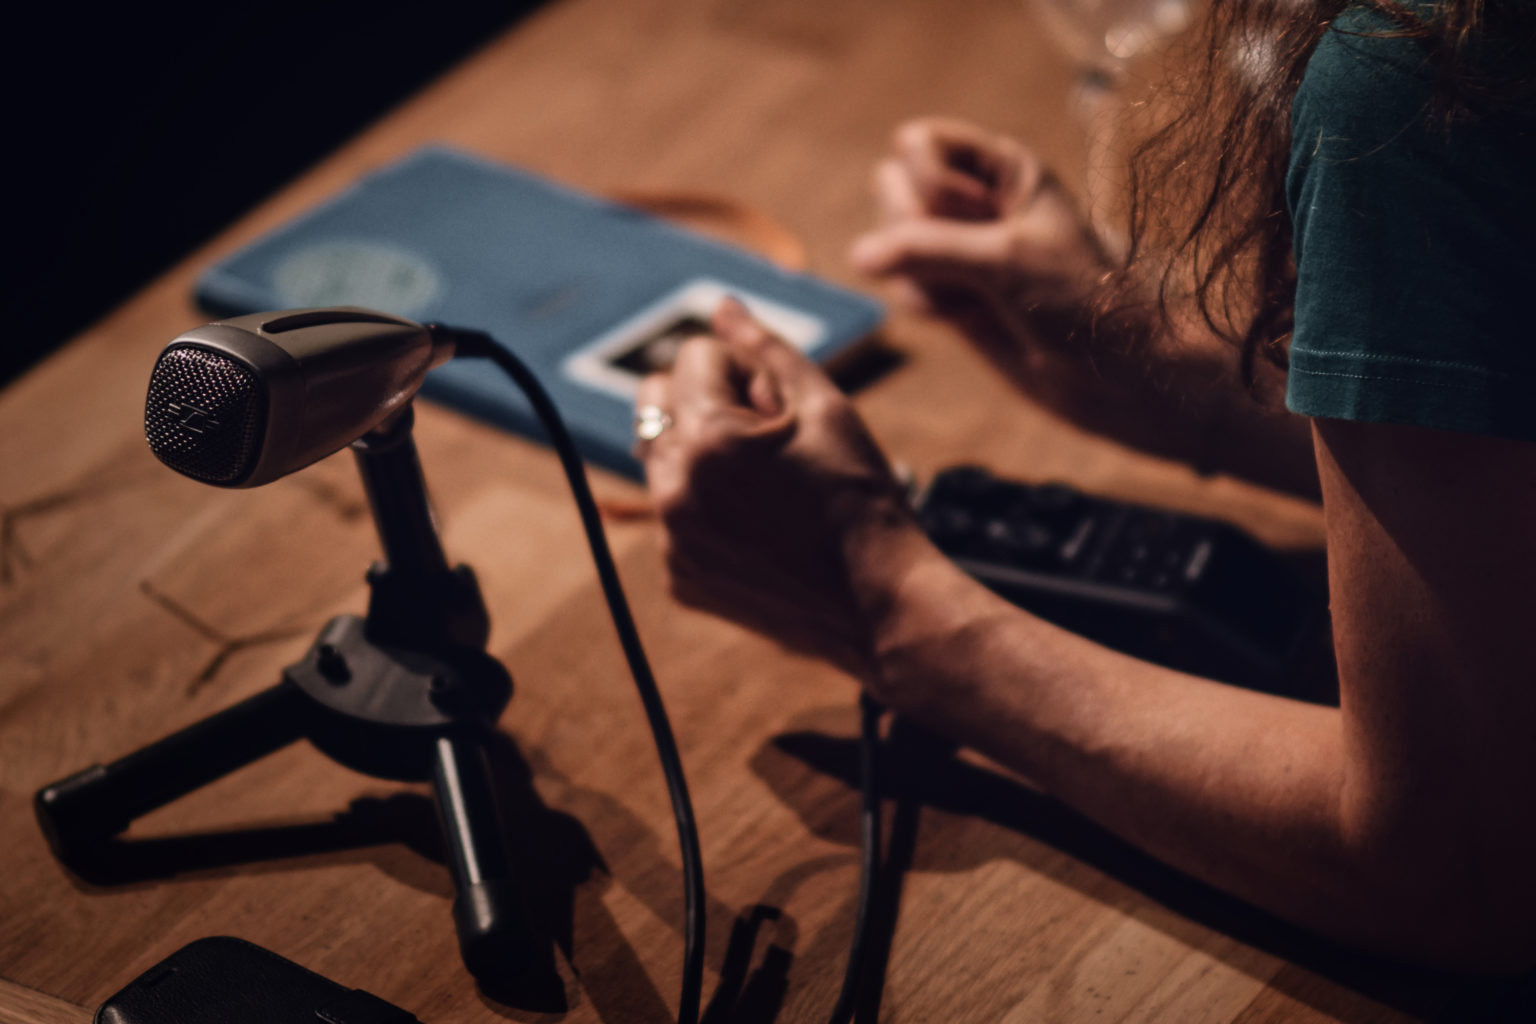 On voit les avant-bras de Jasmina Douieb appuyés sur une table en bois. Autour d'elle, un micro - type radio - et un enregistreur.